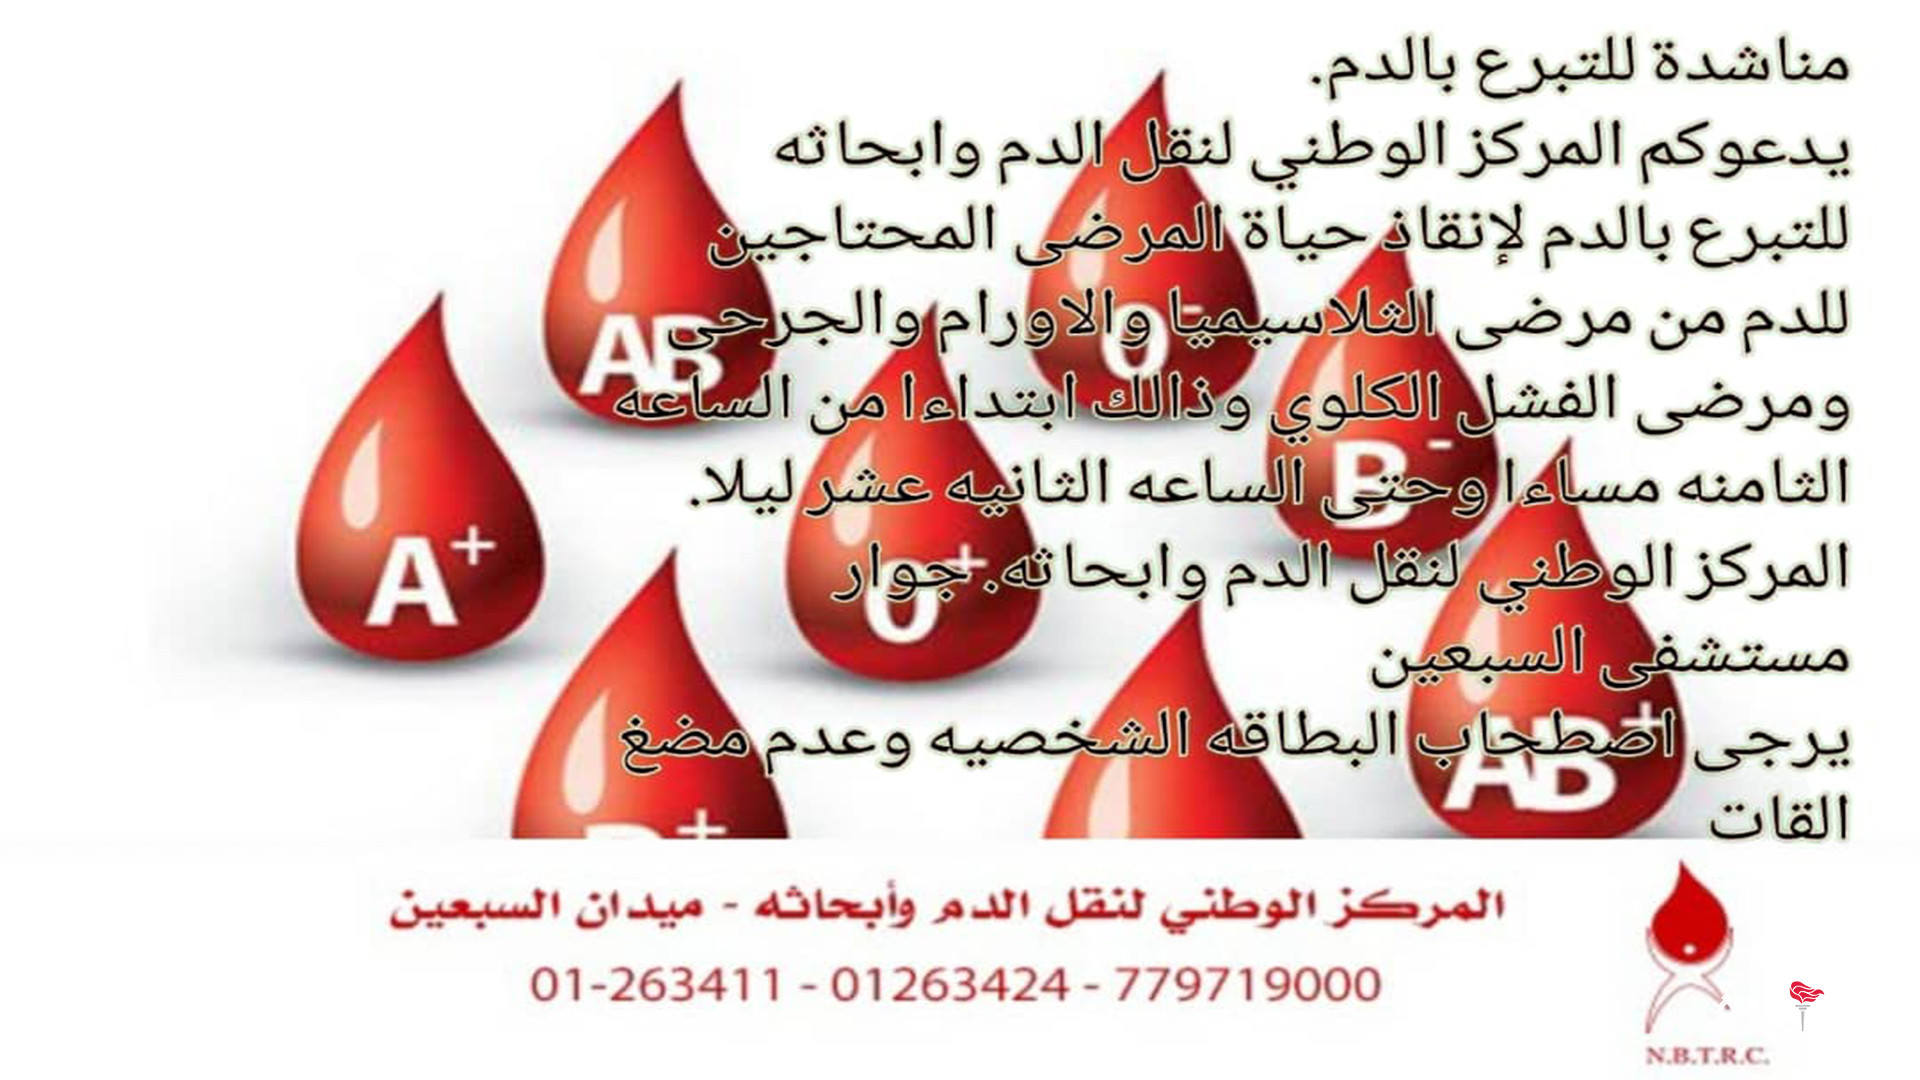 المركز الوطني لنقل الدم وأبحاثه يدعو المواطنين للتبرع بالدم